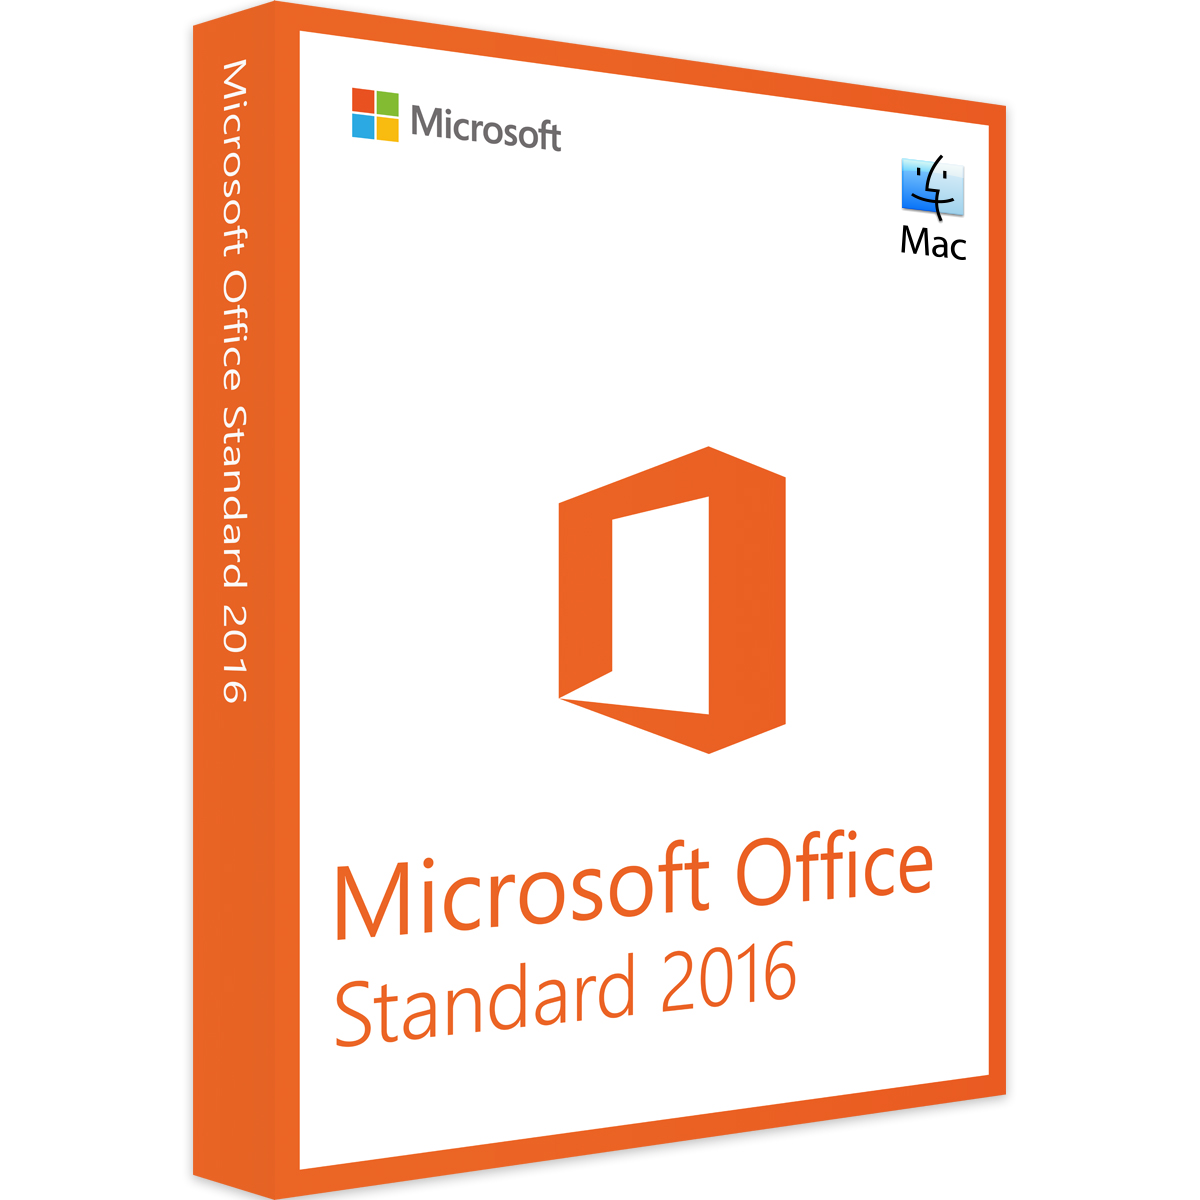 Microsoft Office 2016 Standard | bei günstig kaufen ▻ Mac Softwarekaufen24 für